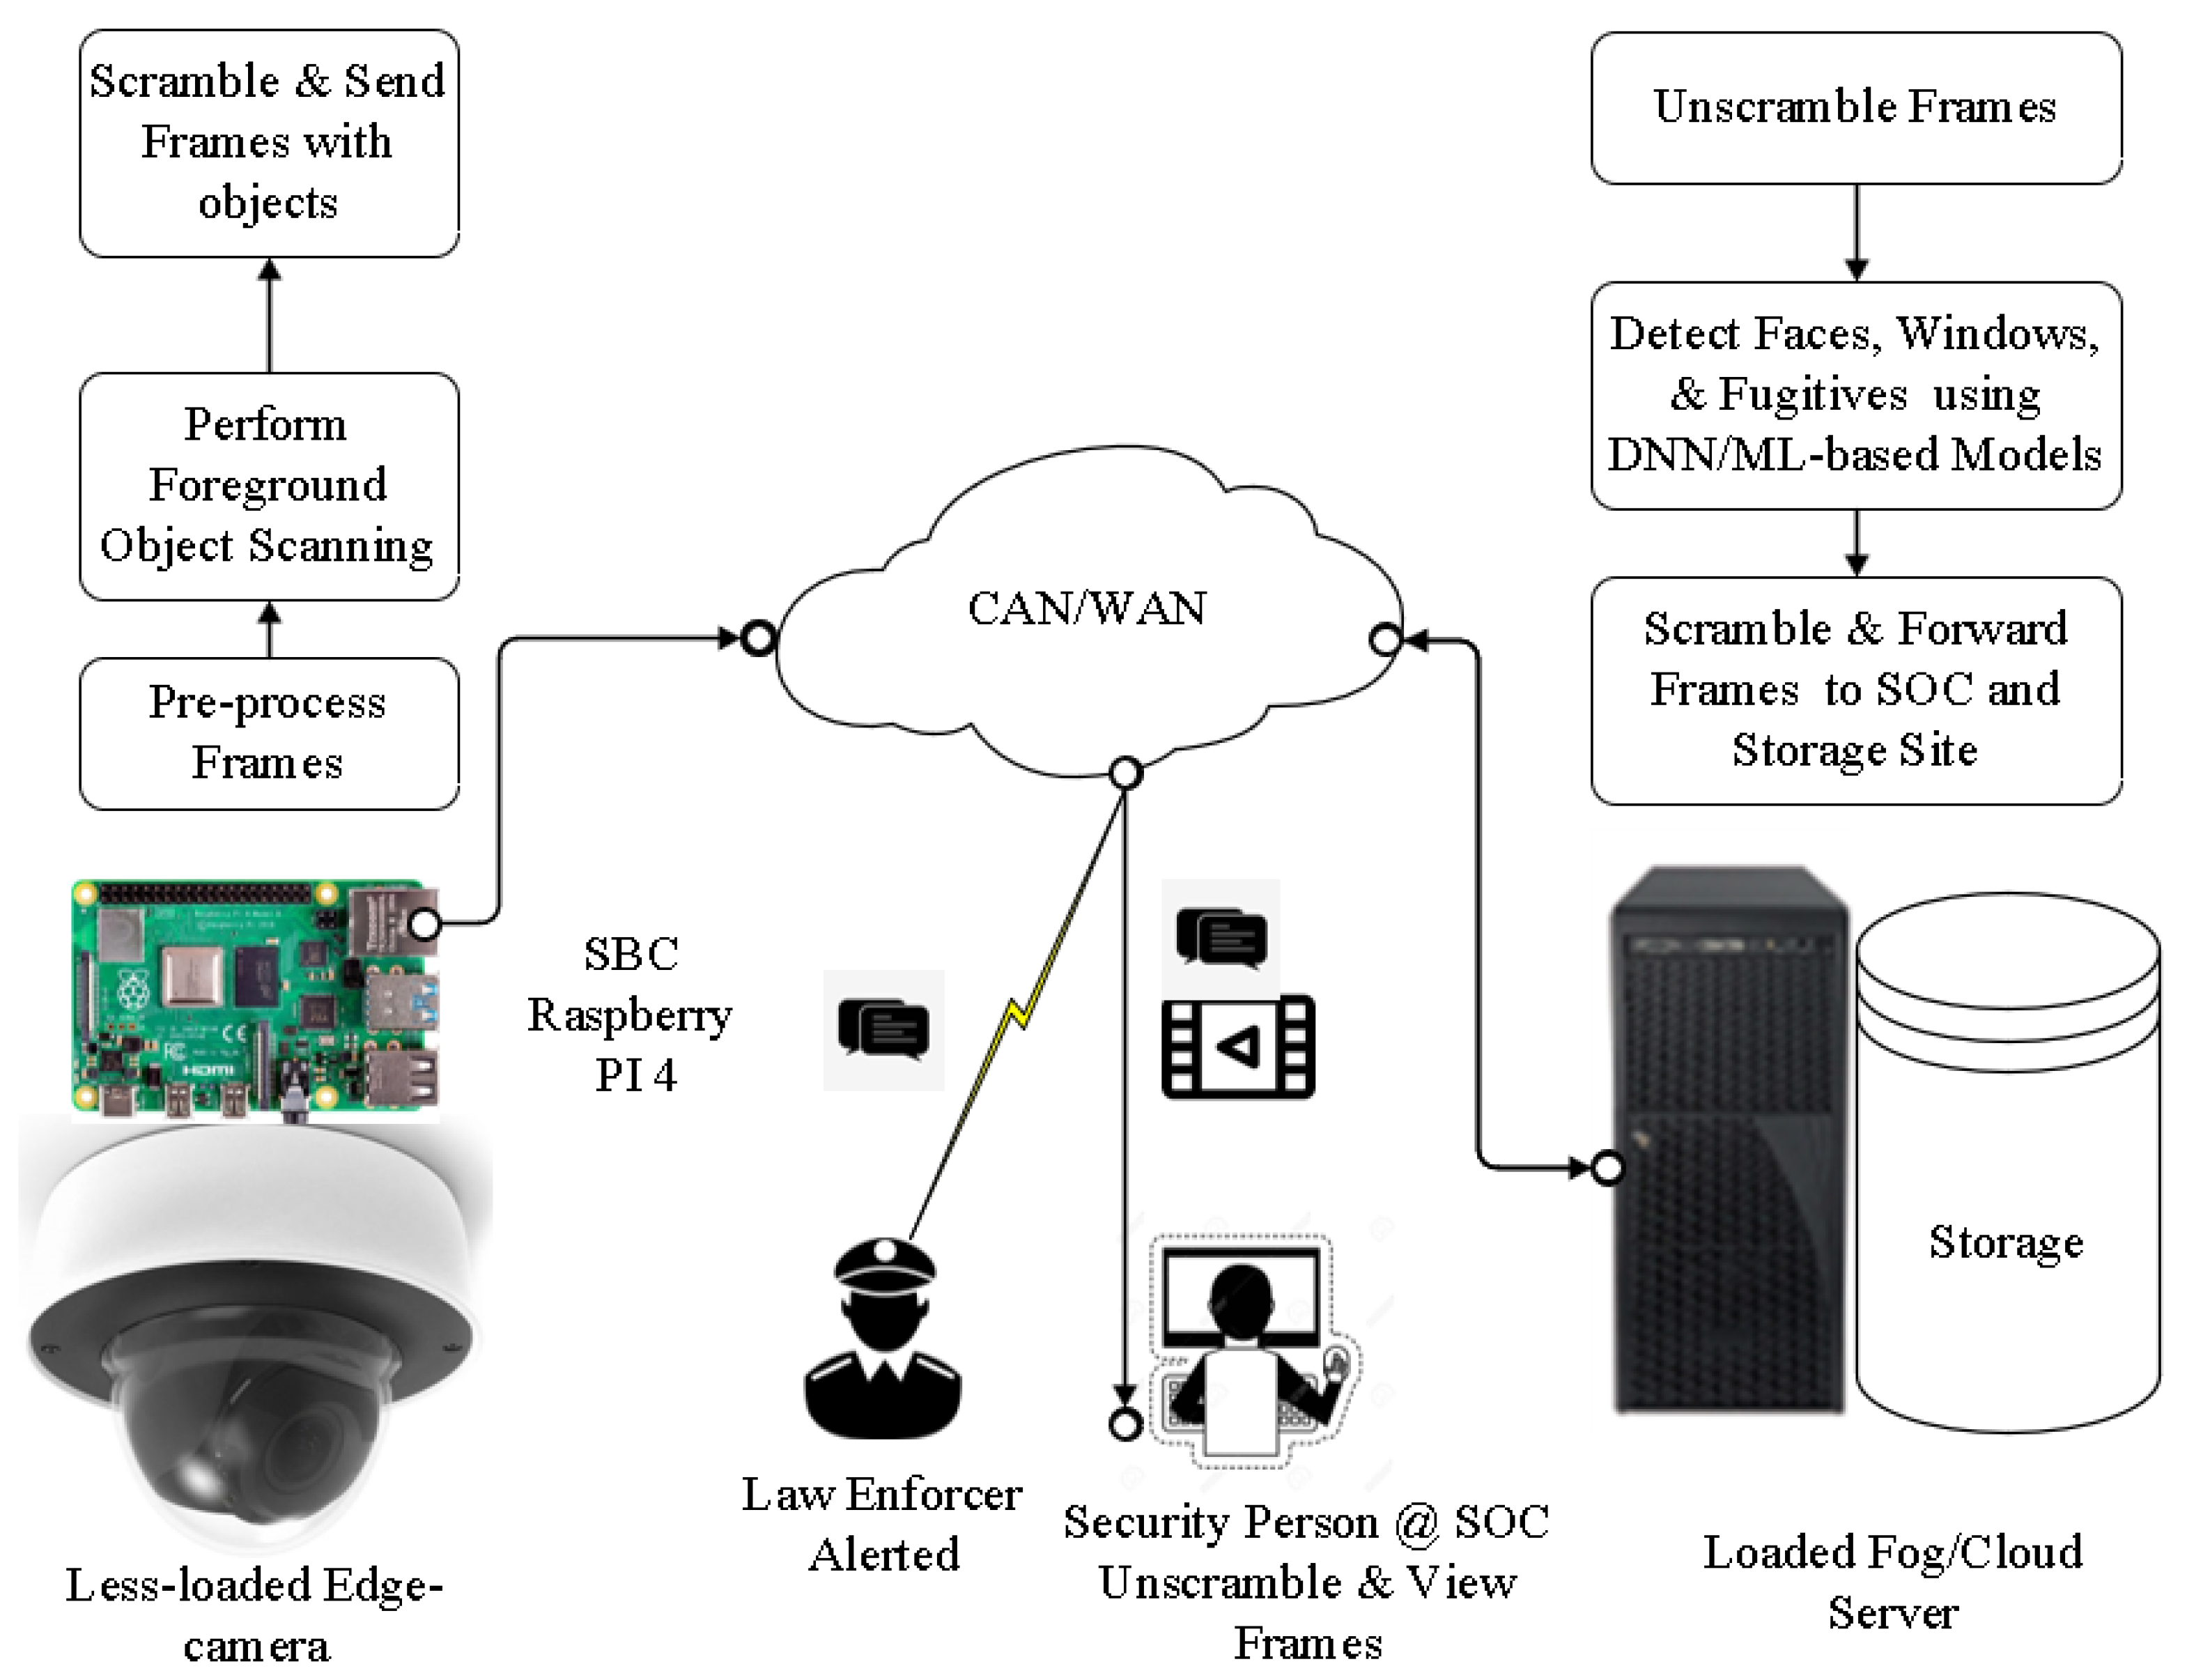 Caméra de surveillance IP 2 millions de pixels sans fil